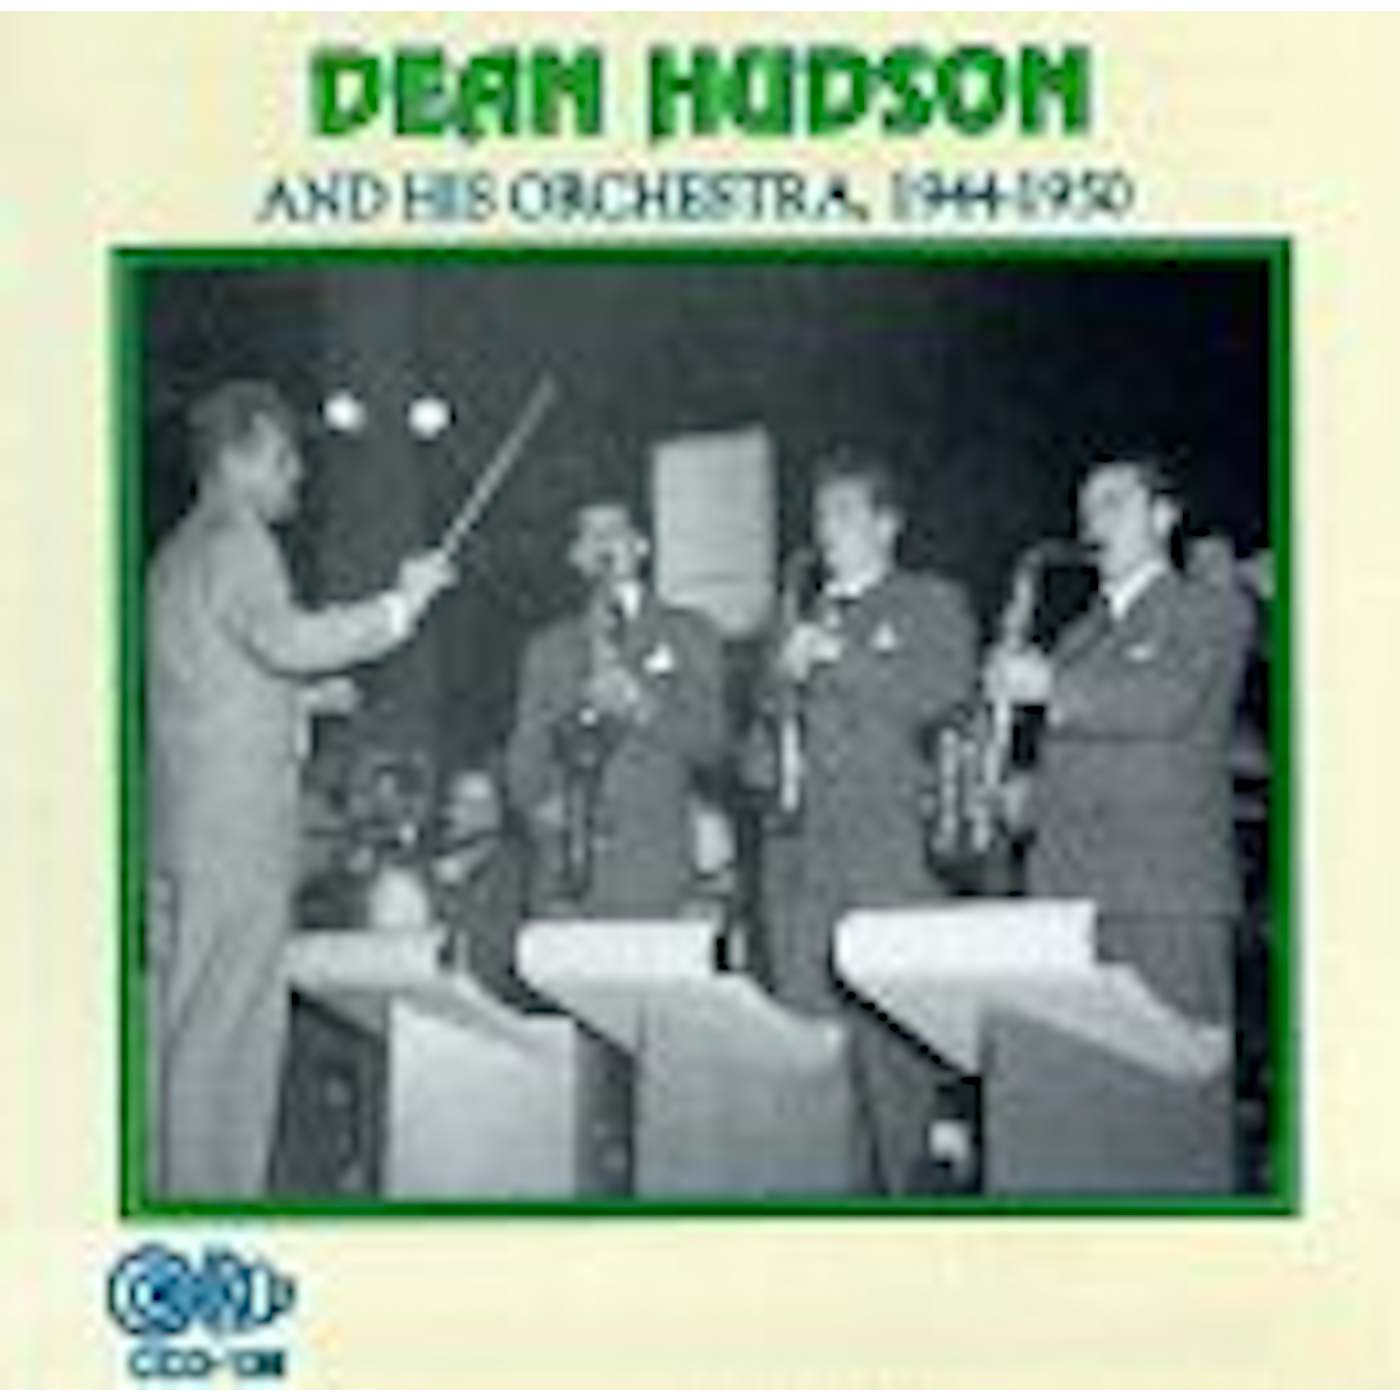 Hudson Dean 1944-1950 3 CD